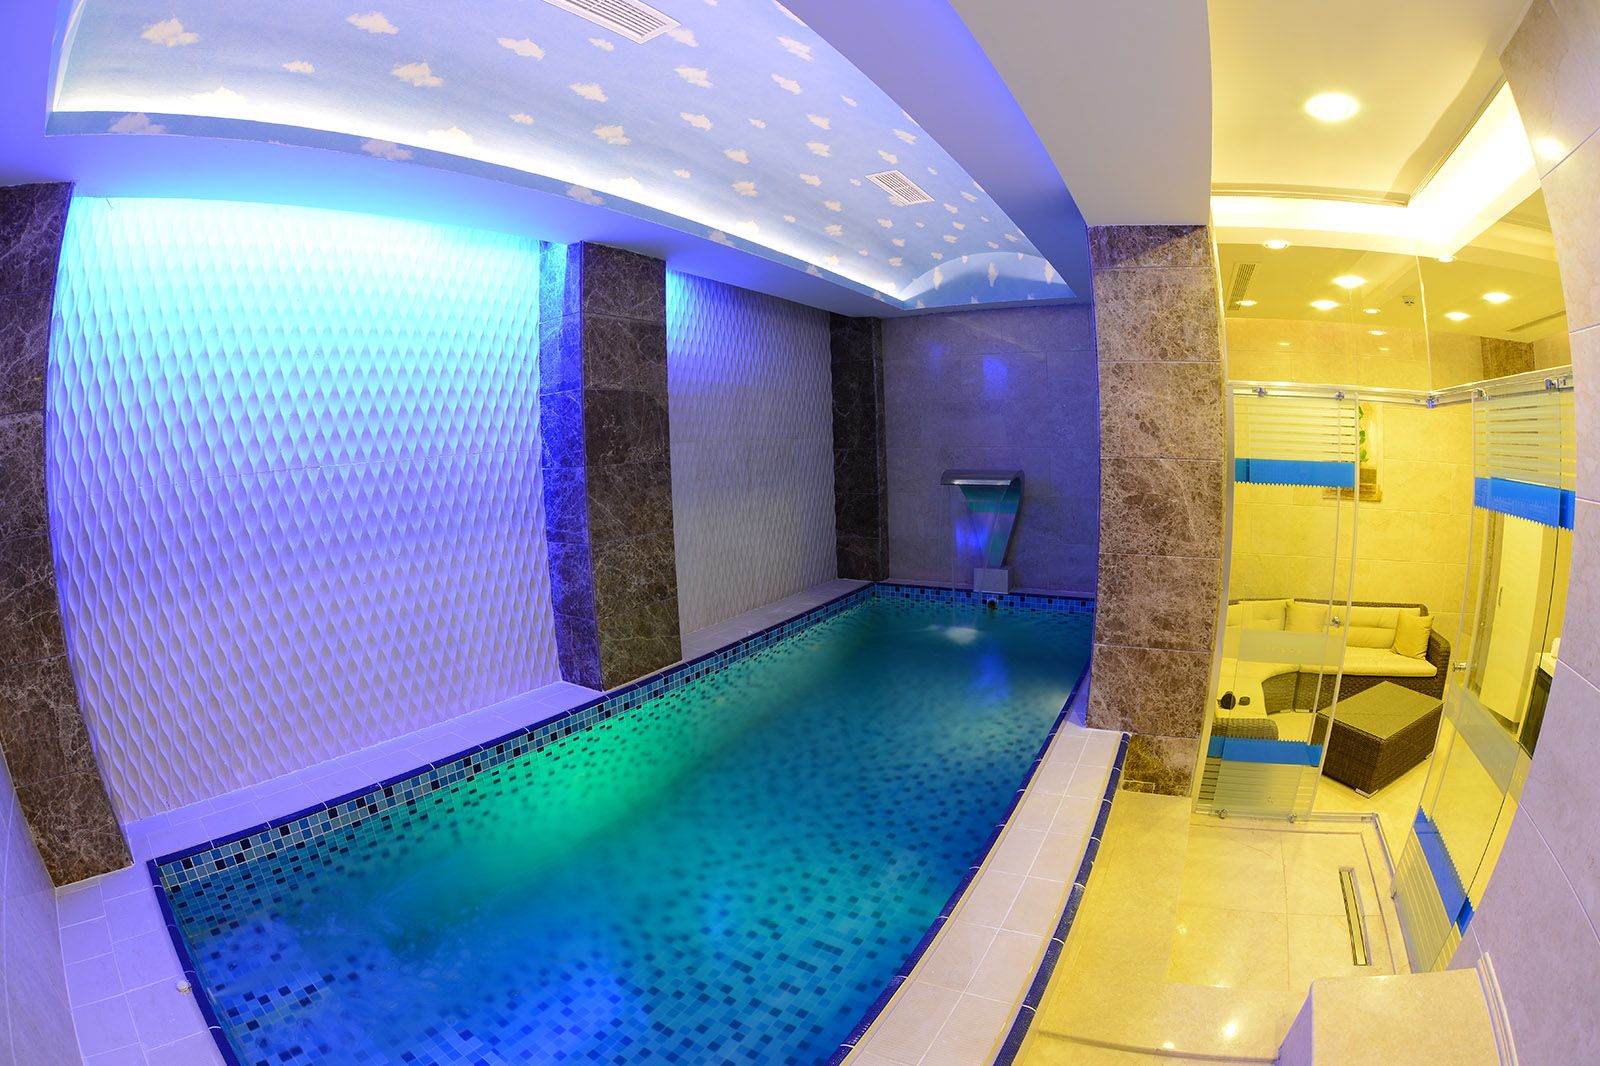 Fimar Life Thermal Resort Hotel korunaklı bir ortamda ailece termal suyun keyfini çıkarabilmek için özel aile kabini sunuyor